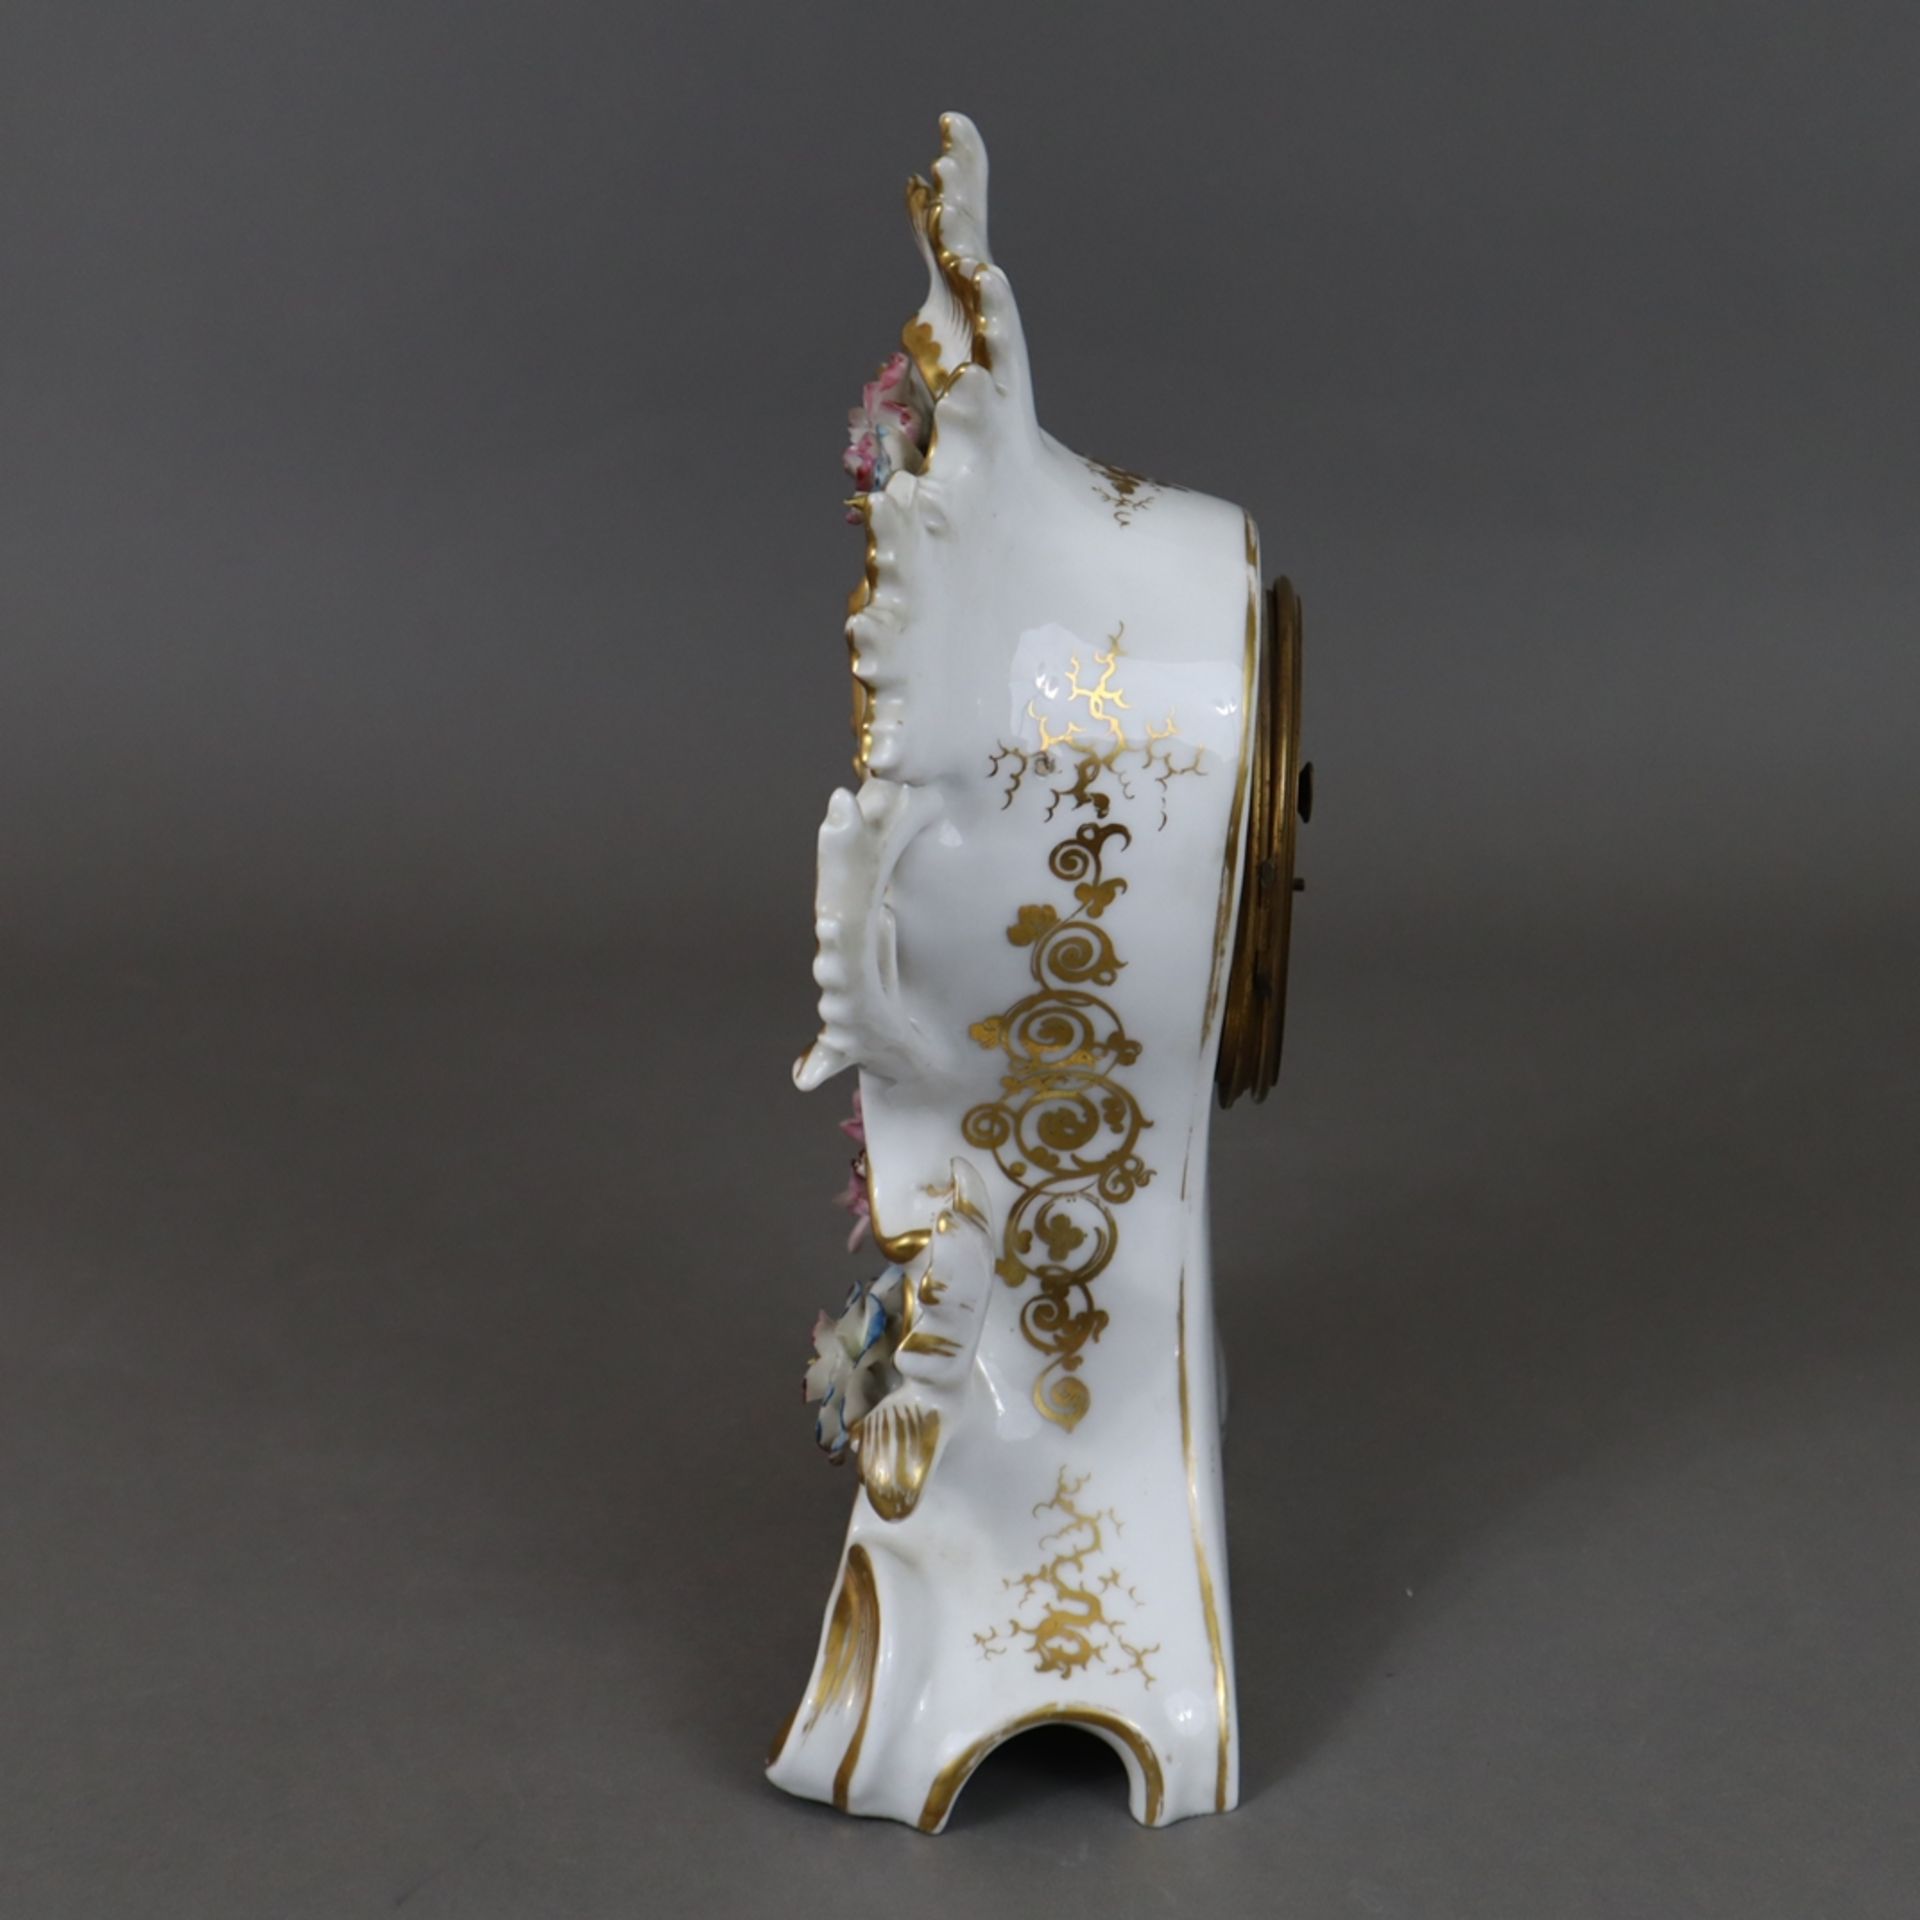 Porzellanuhr - teils durchbrochen gearbeitetes Rocaillegehäuse mit polychromer Blumenmalerei, Golds - Image 7 of 11